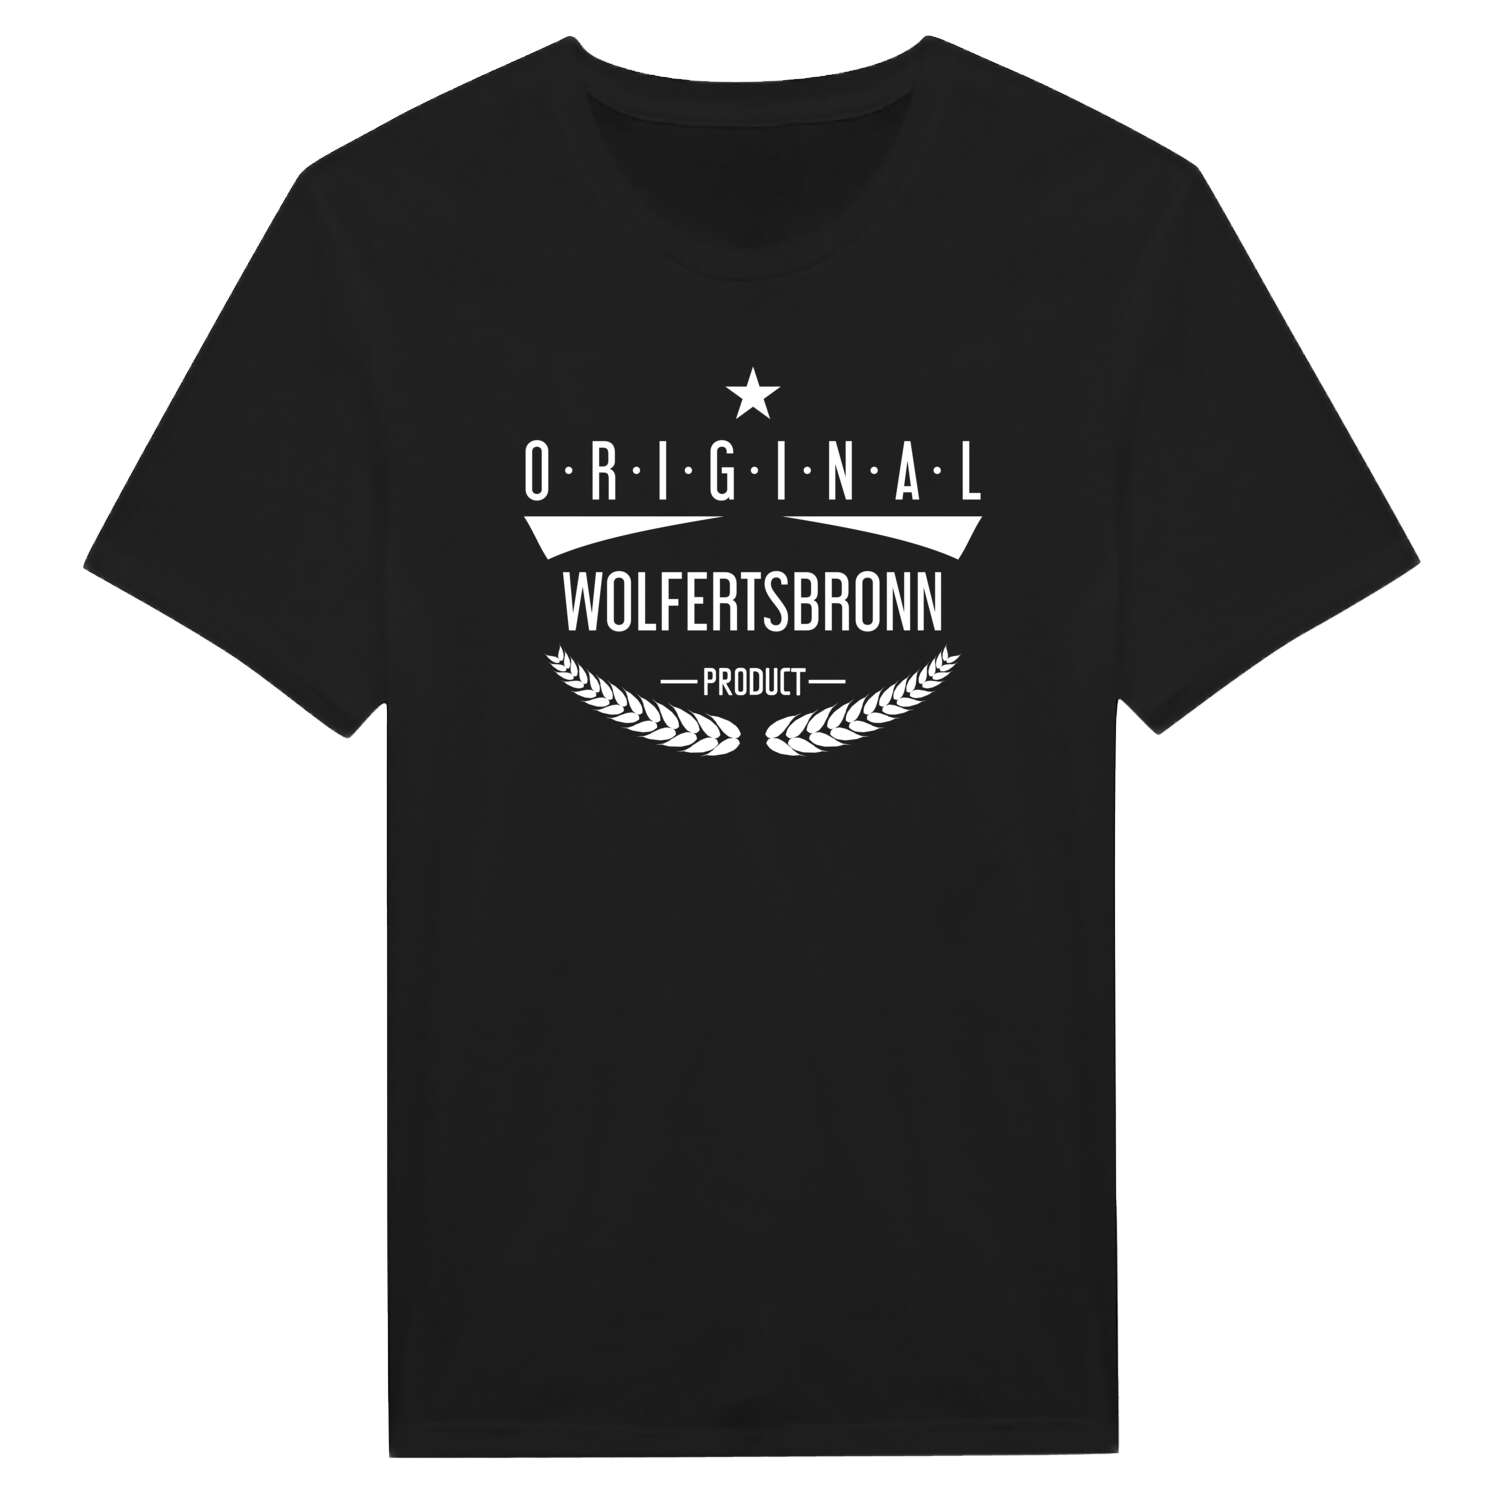 Wolfertsbronn T-Shirt »Original Product«